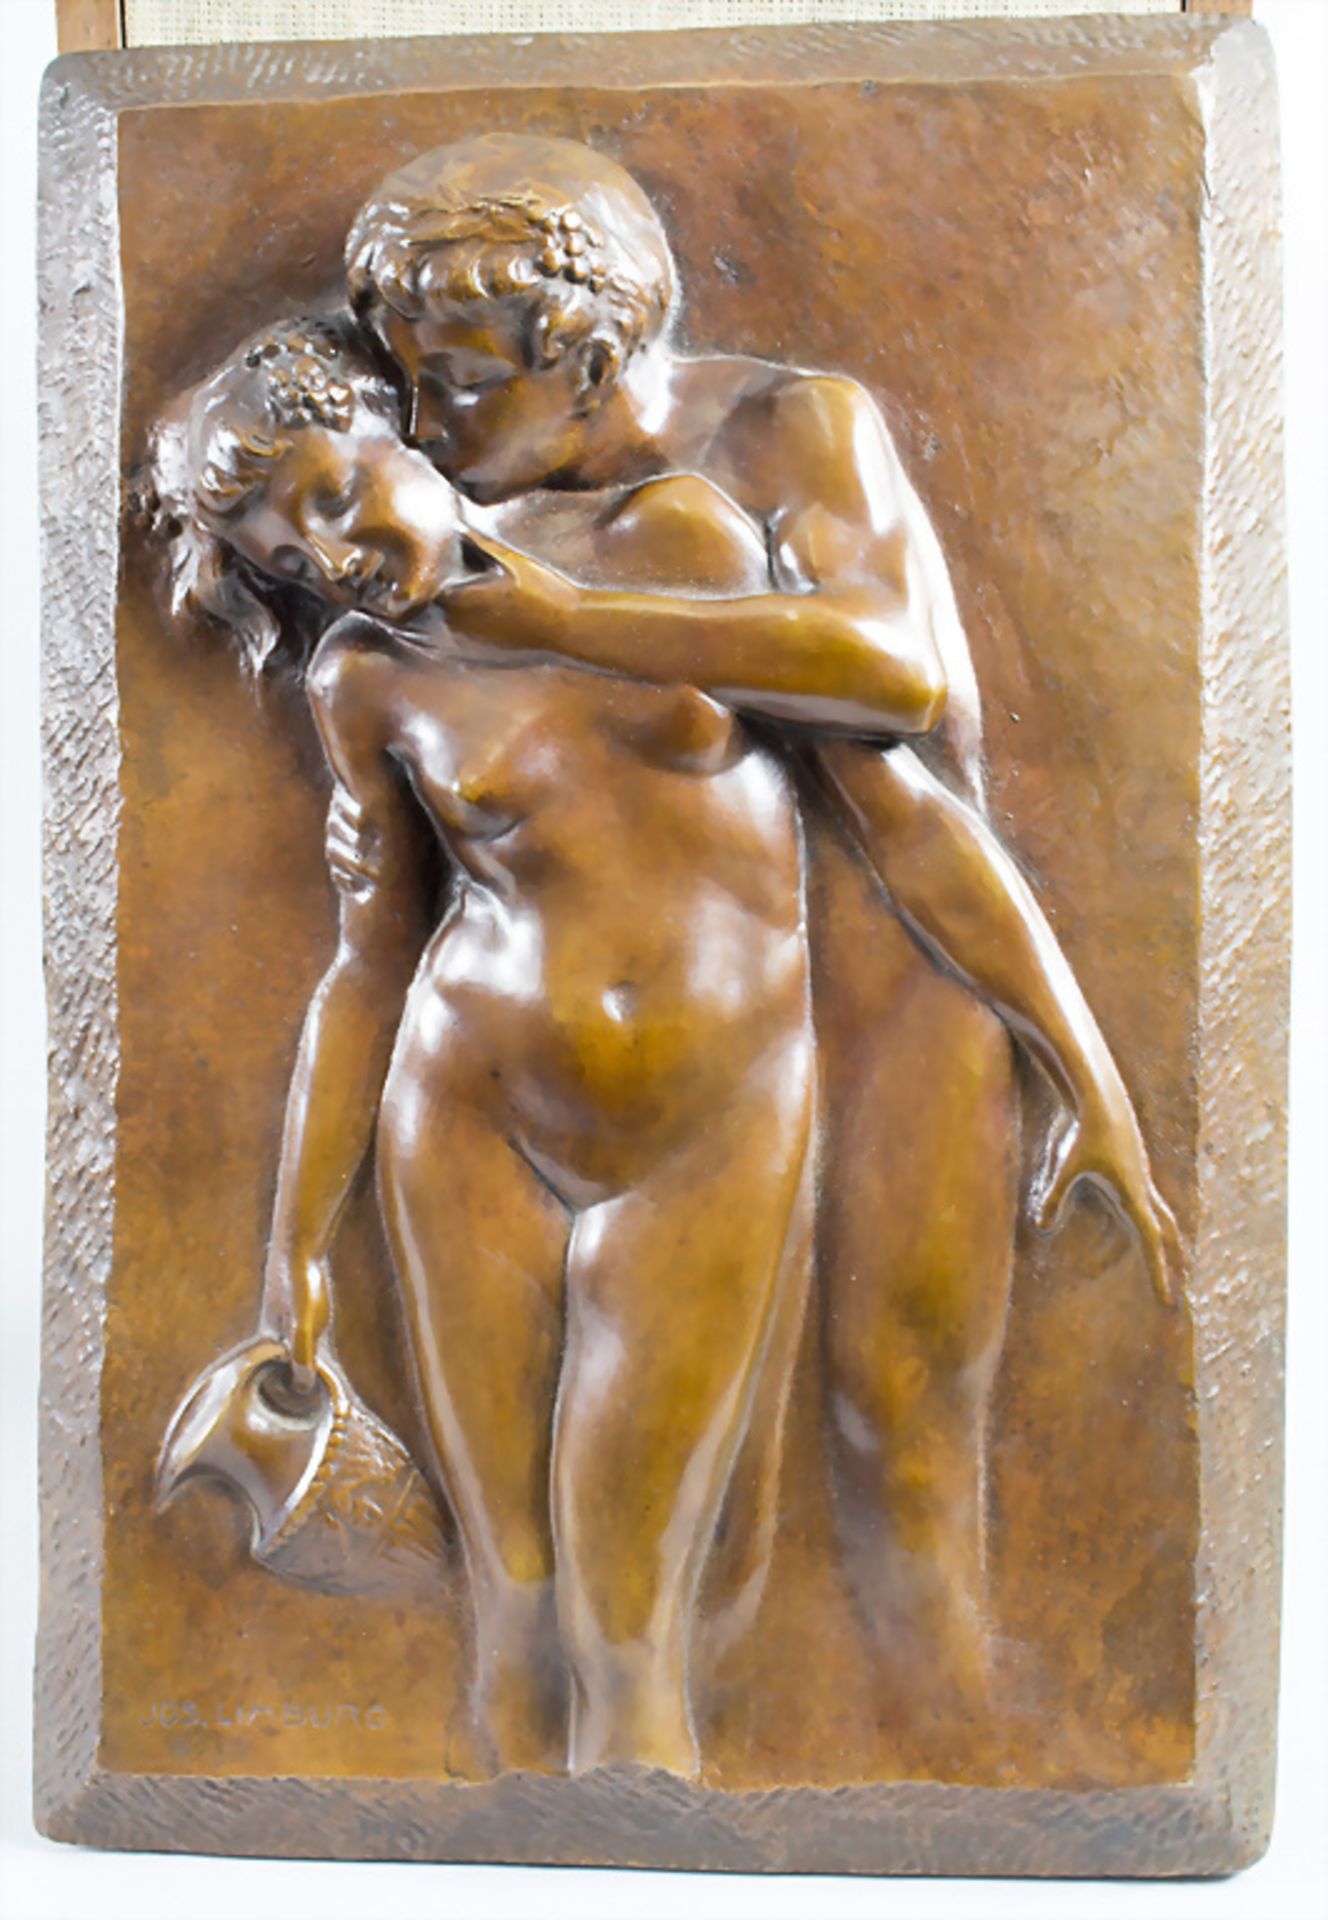 Josef LIMBURG (1874-1955), Jugendstil Bronzeplastik im Hochrelief 'Liebende', um 1910